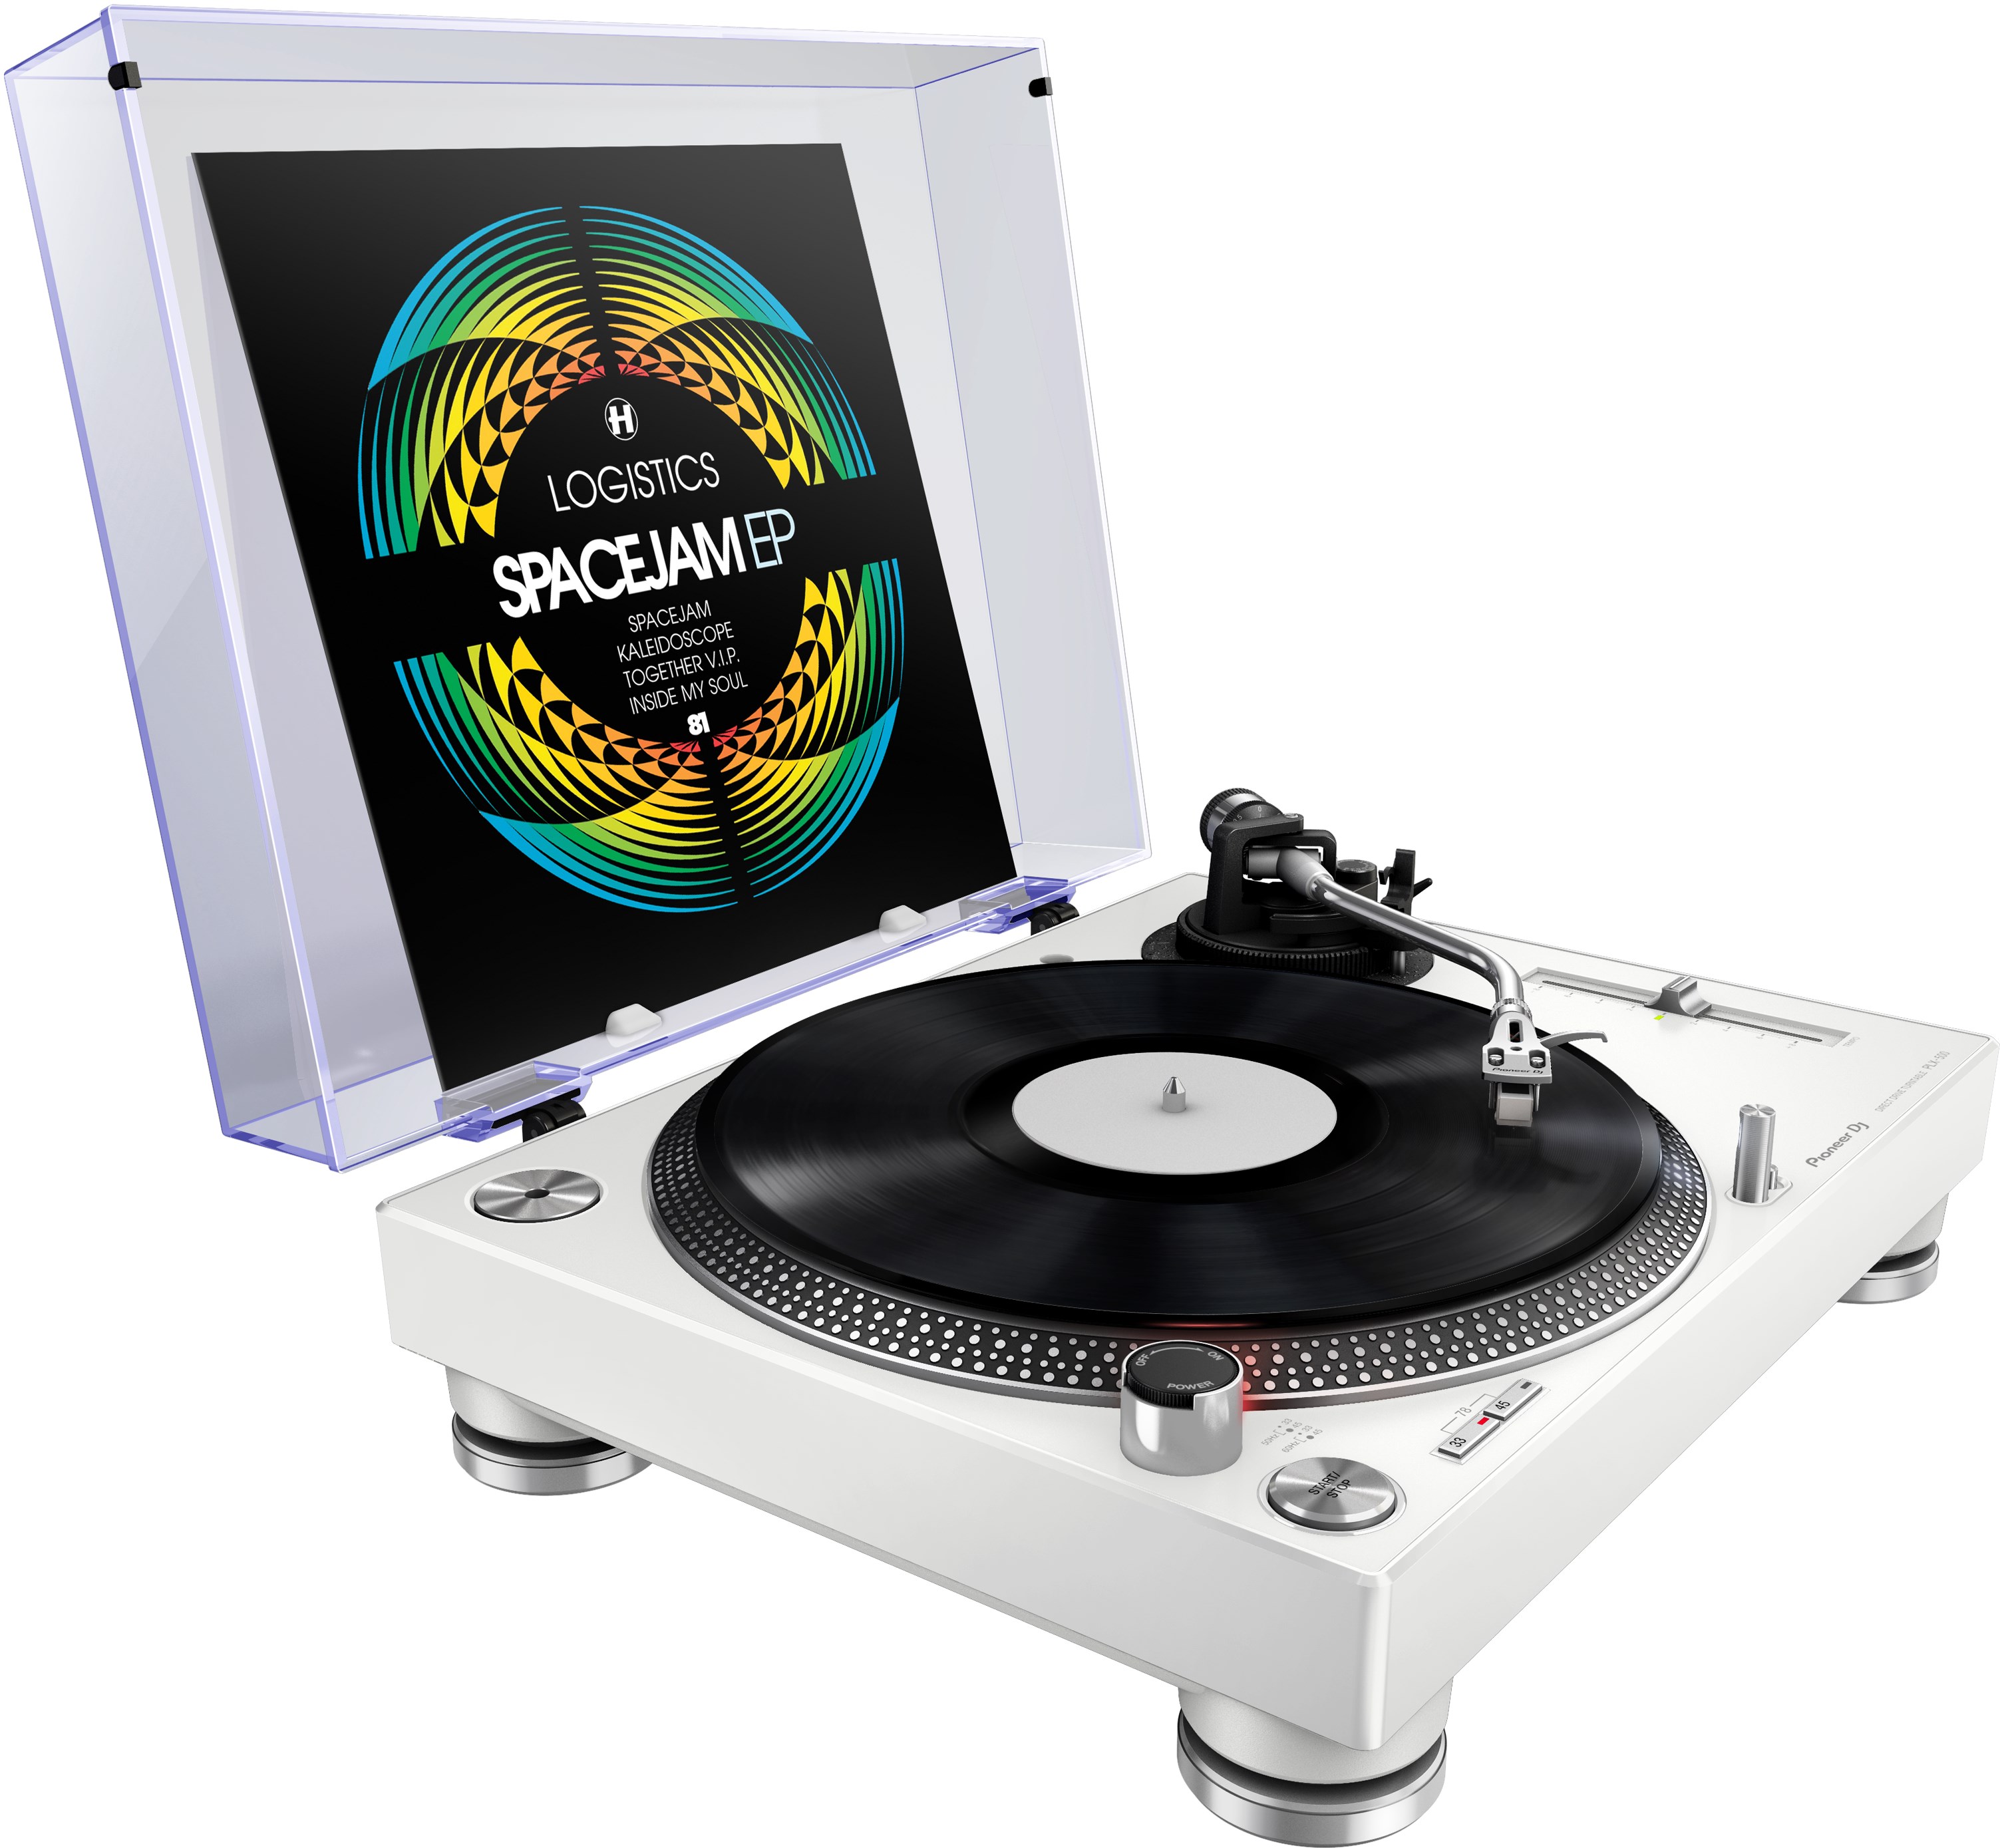 交換可能なフォノカートリッジタイプ・ダイレクトドライブ・レコードプレーヤーPioneer DJ PLX-500-W